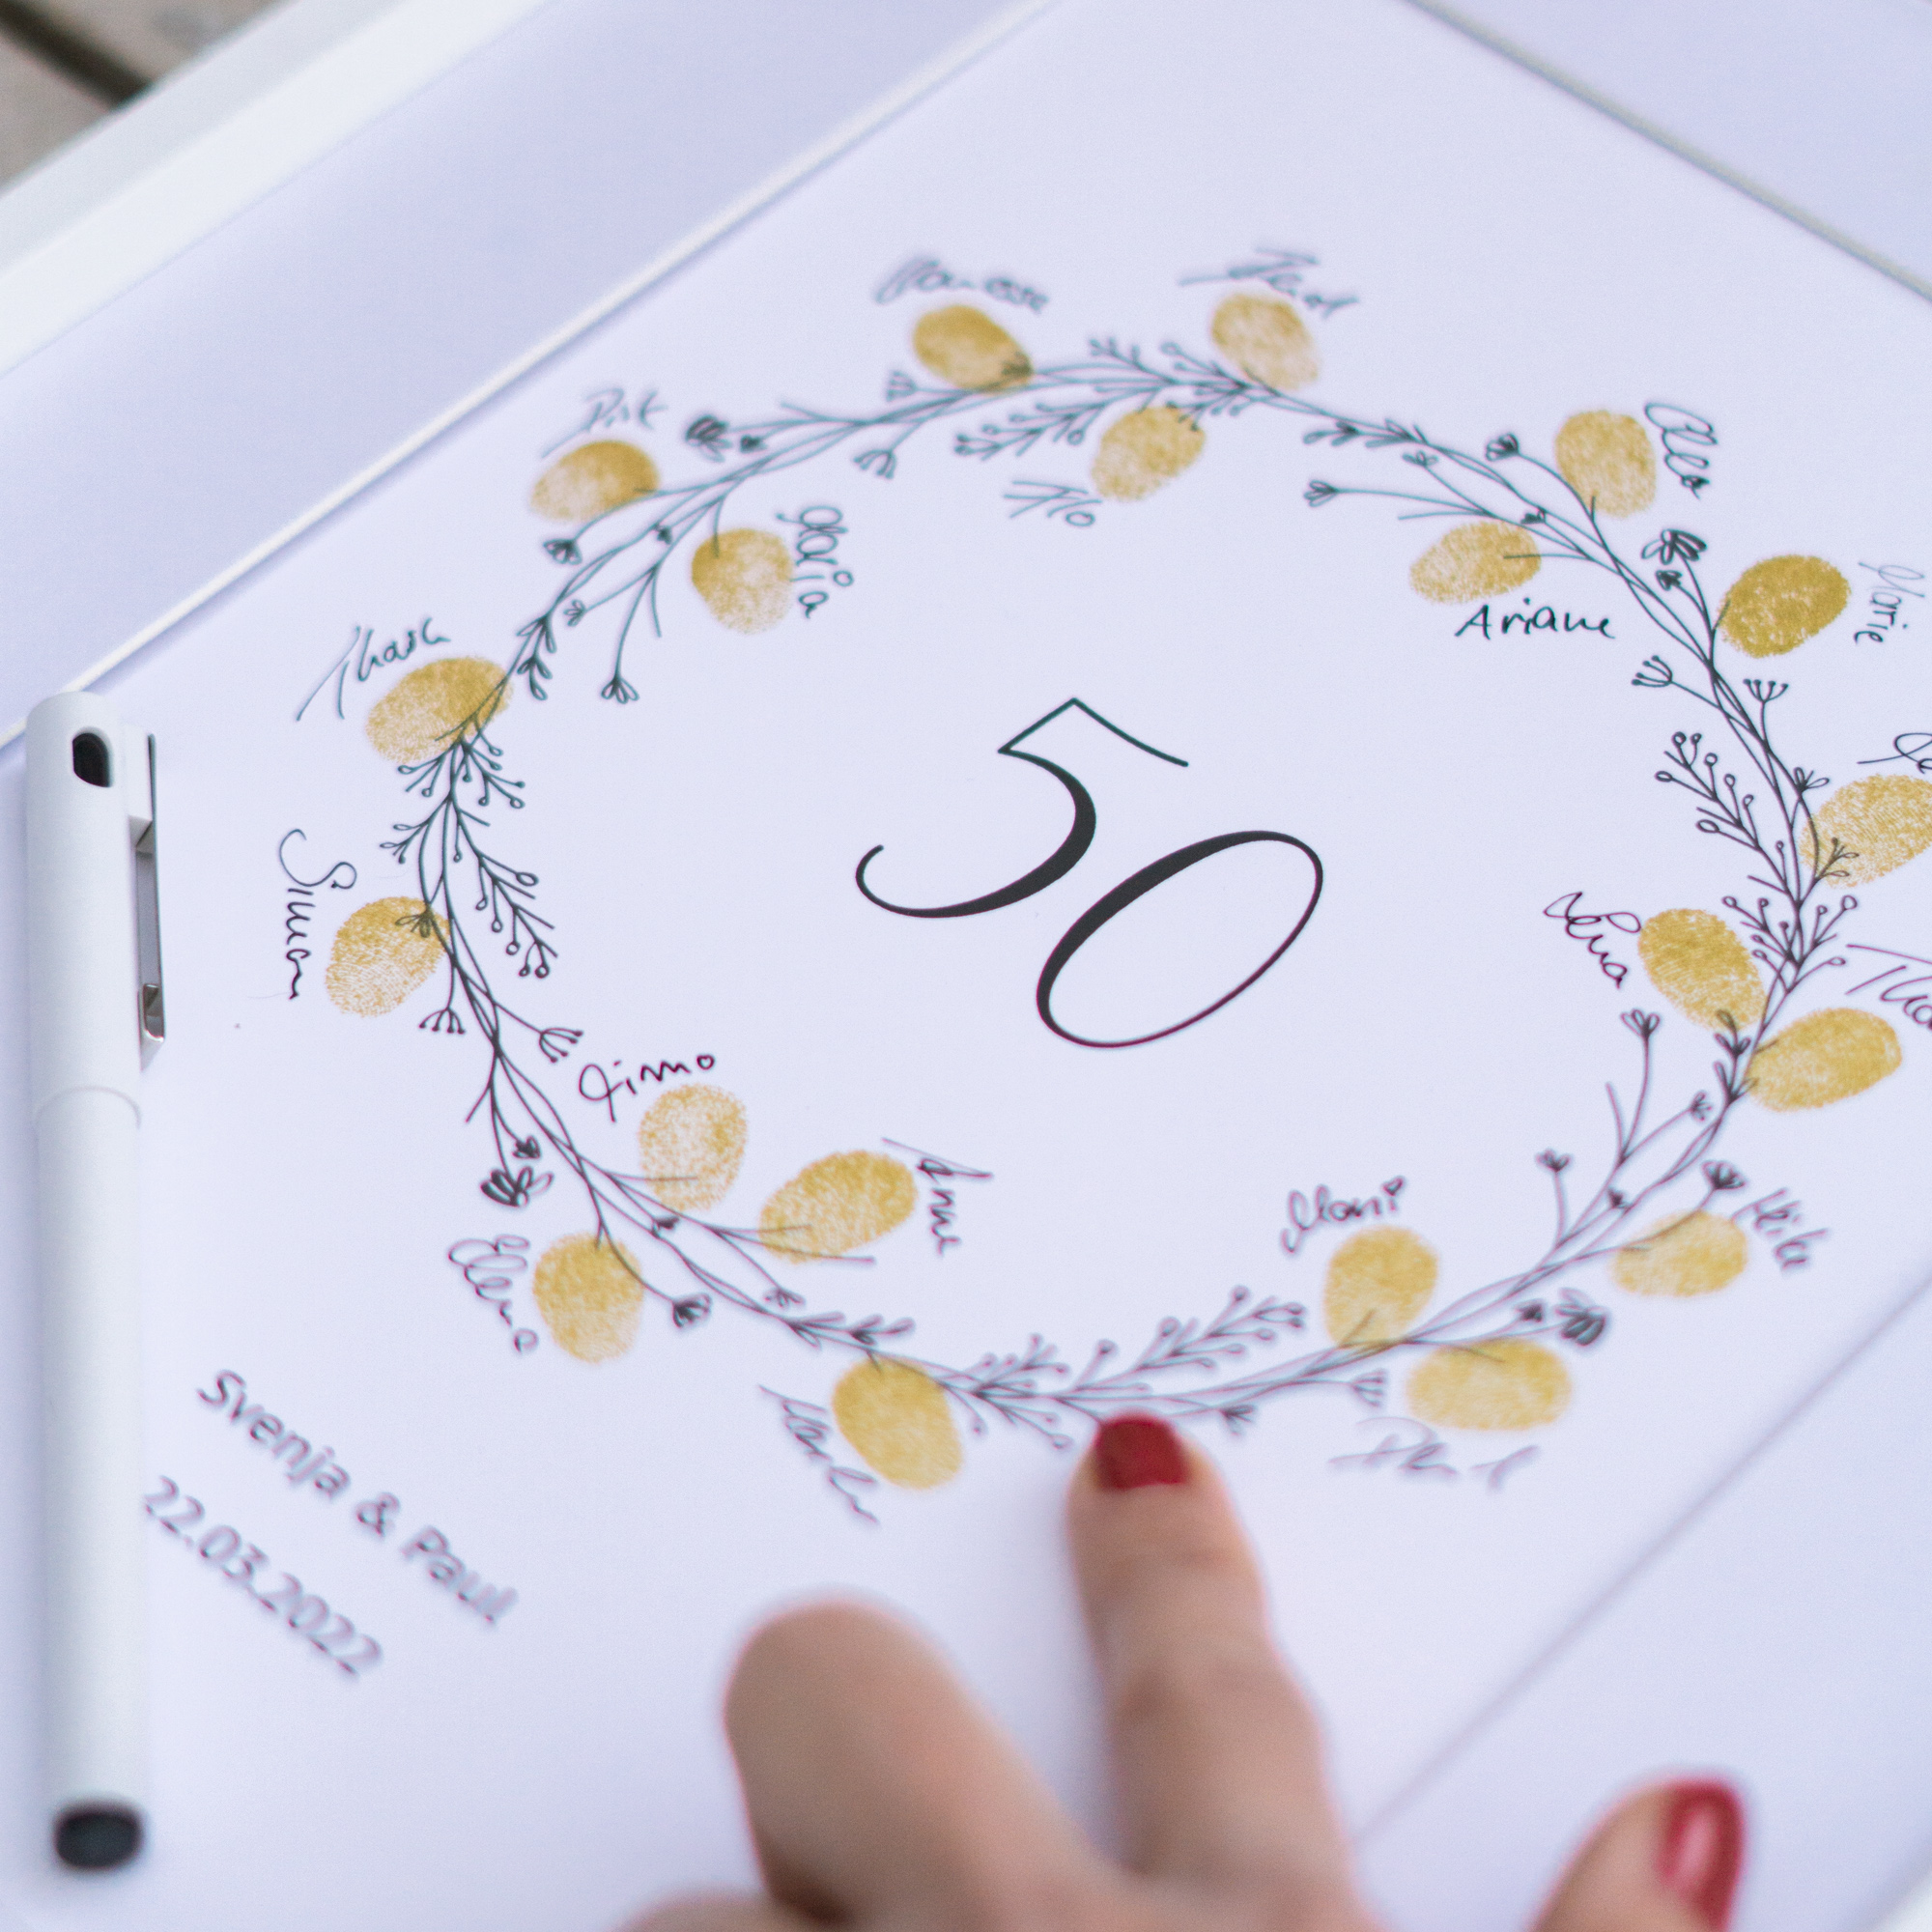 Weddingtree Fingerabdruckbild als Gäastebuch Geschenk Idee zu 50 Jahre Hochzeit goldene Hochzeit Ehejubiläum